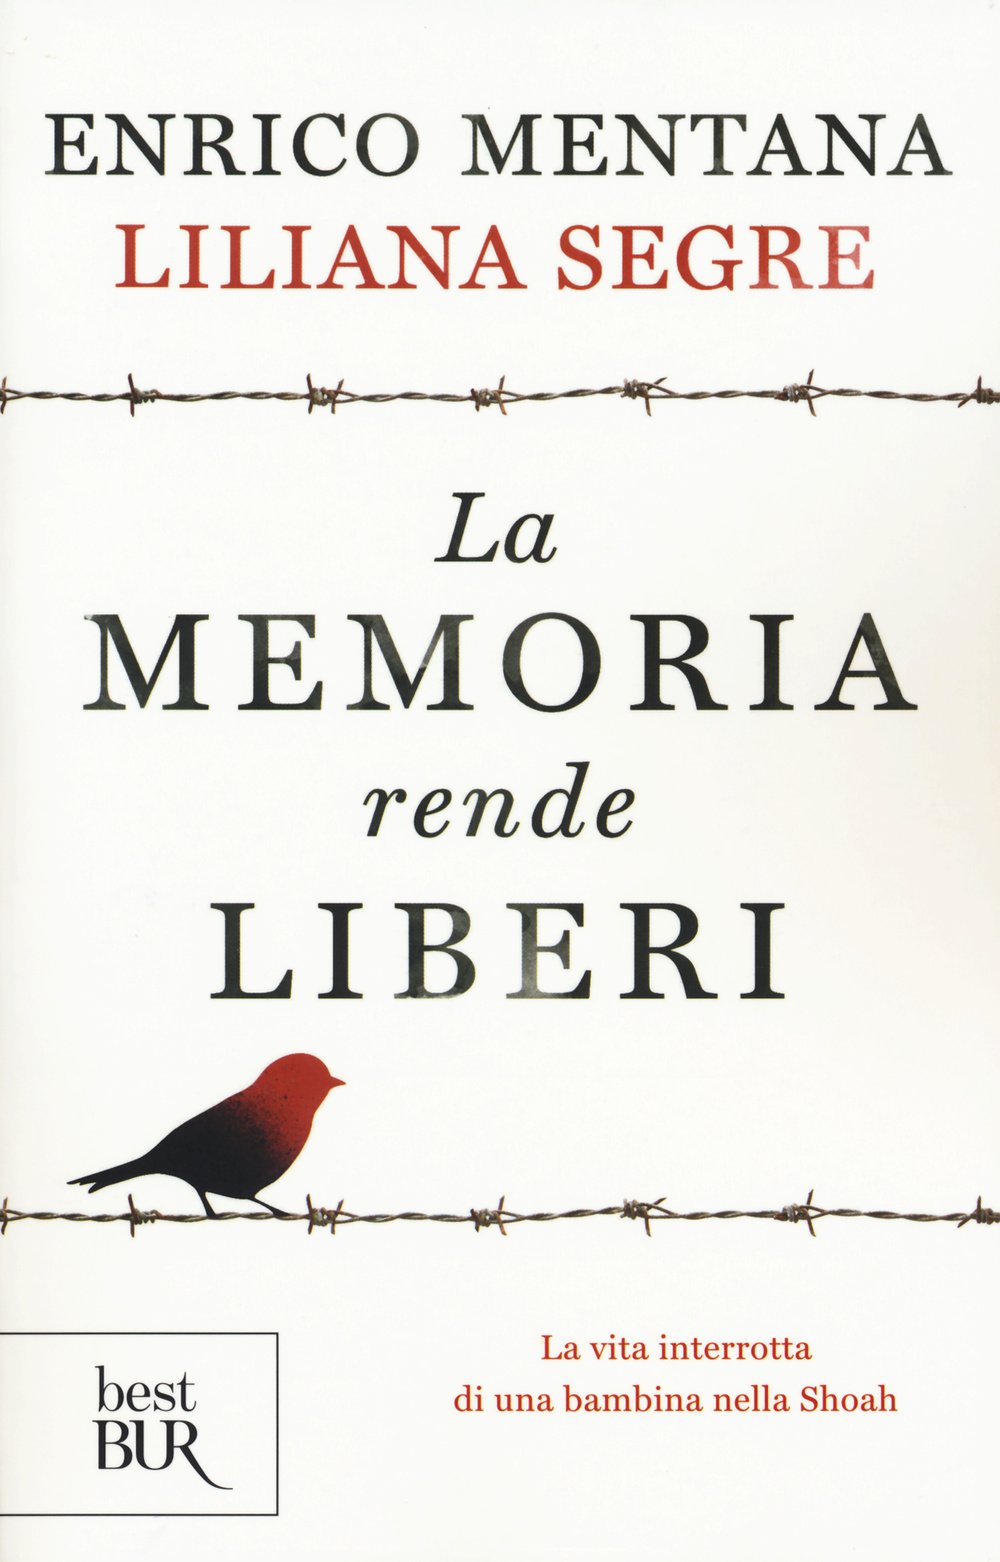 Enrico Mentana - Liliana Segre, La memoria rende liberi. La vita interrotta di una bambina nella Shoah, Milano, Rizzoli, 2015